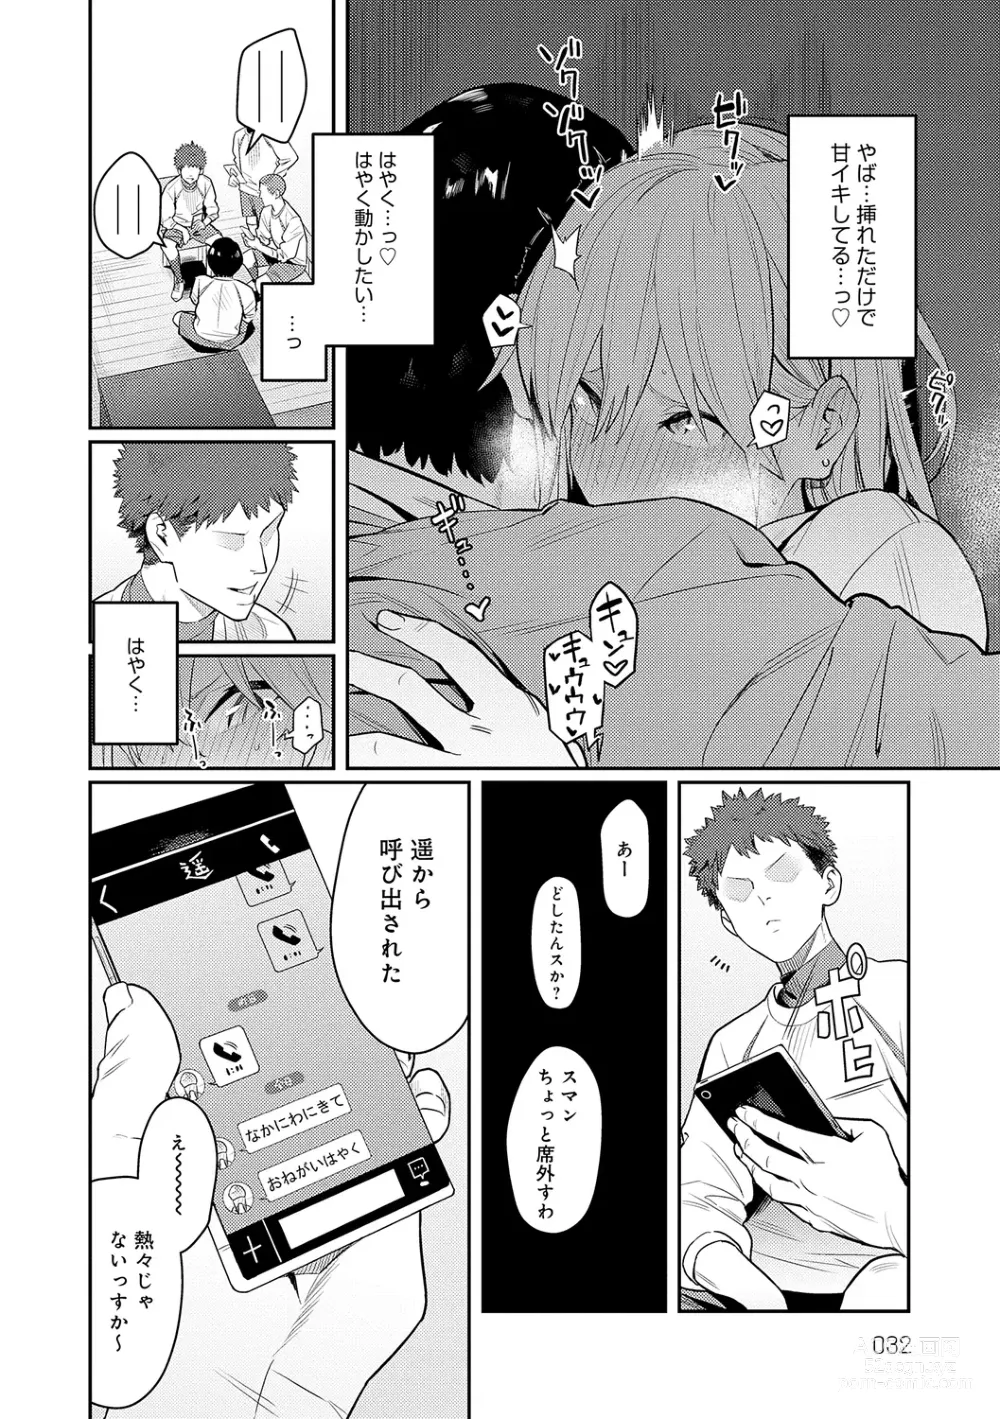 Page 32 of manga Seiyoku Tsuyo Tsuyo + Extra (decensored)